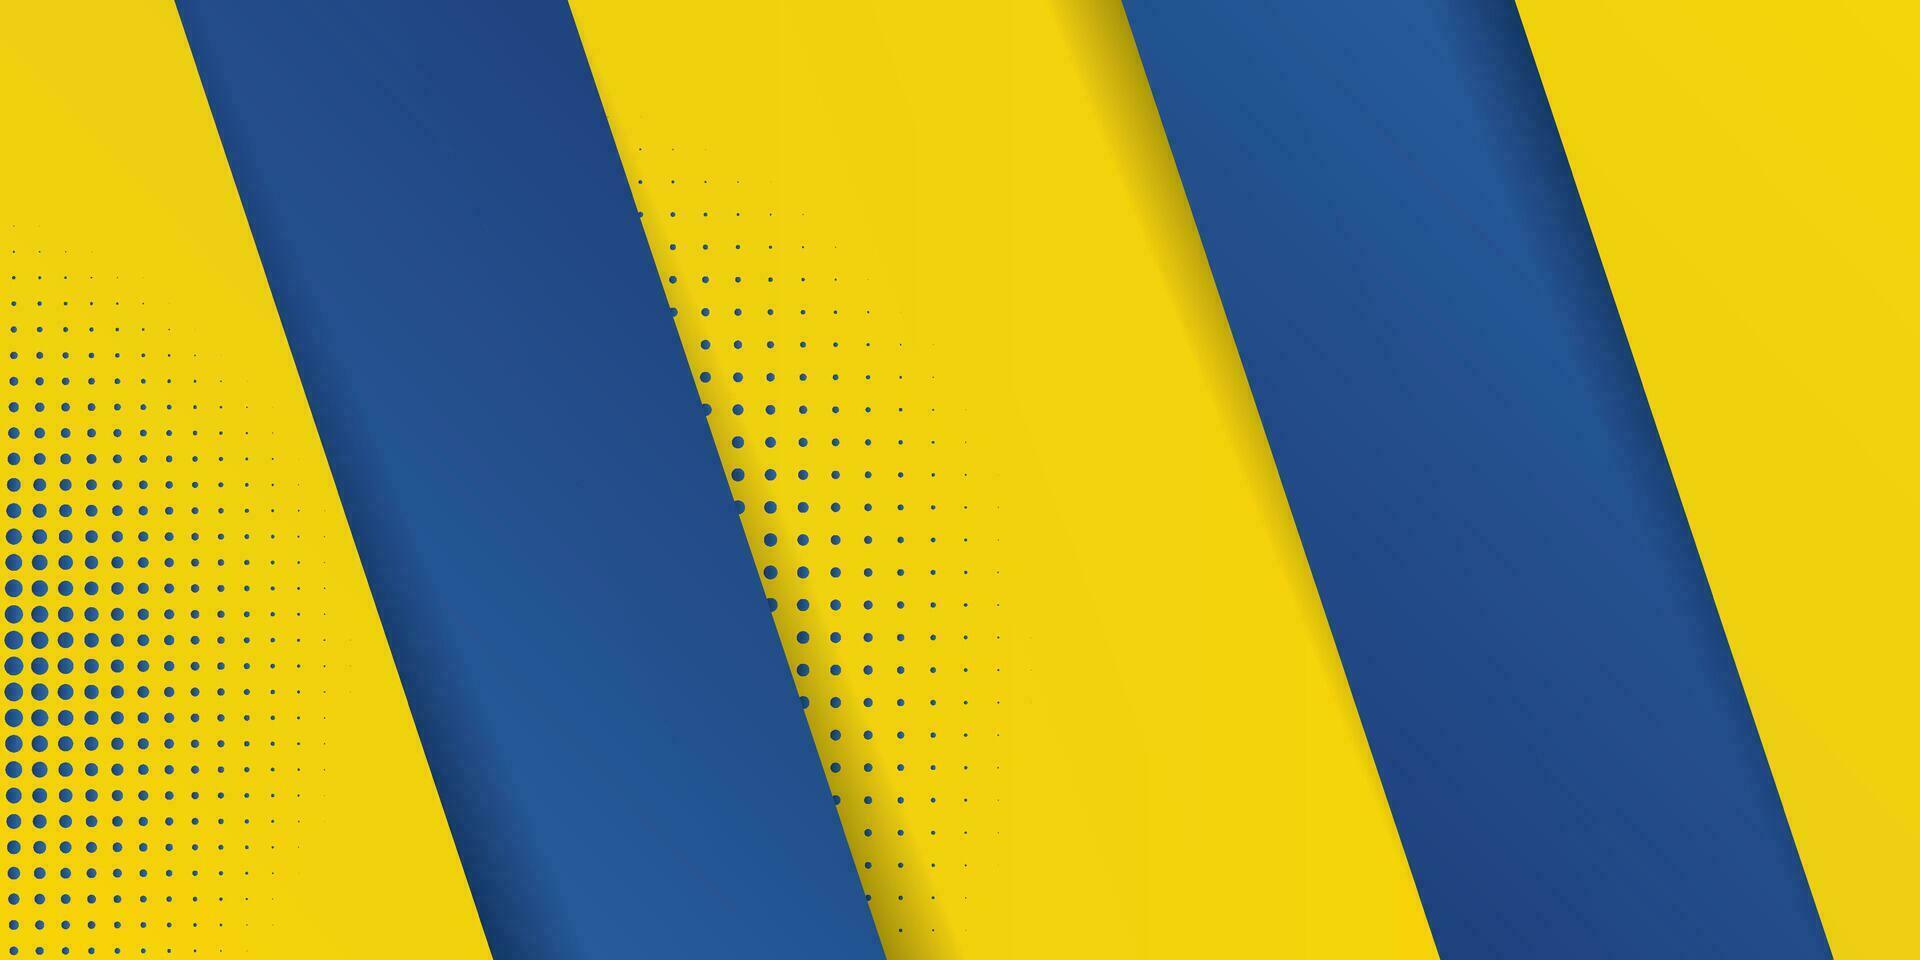 gráfico futurista hipster moderno de fondo abstracto. fondo amarillo con rayas. diseño de textura de fondo abstracto vectorial, póster brillante, ilustración de vector de fondo amarillo y azul de banner.